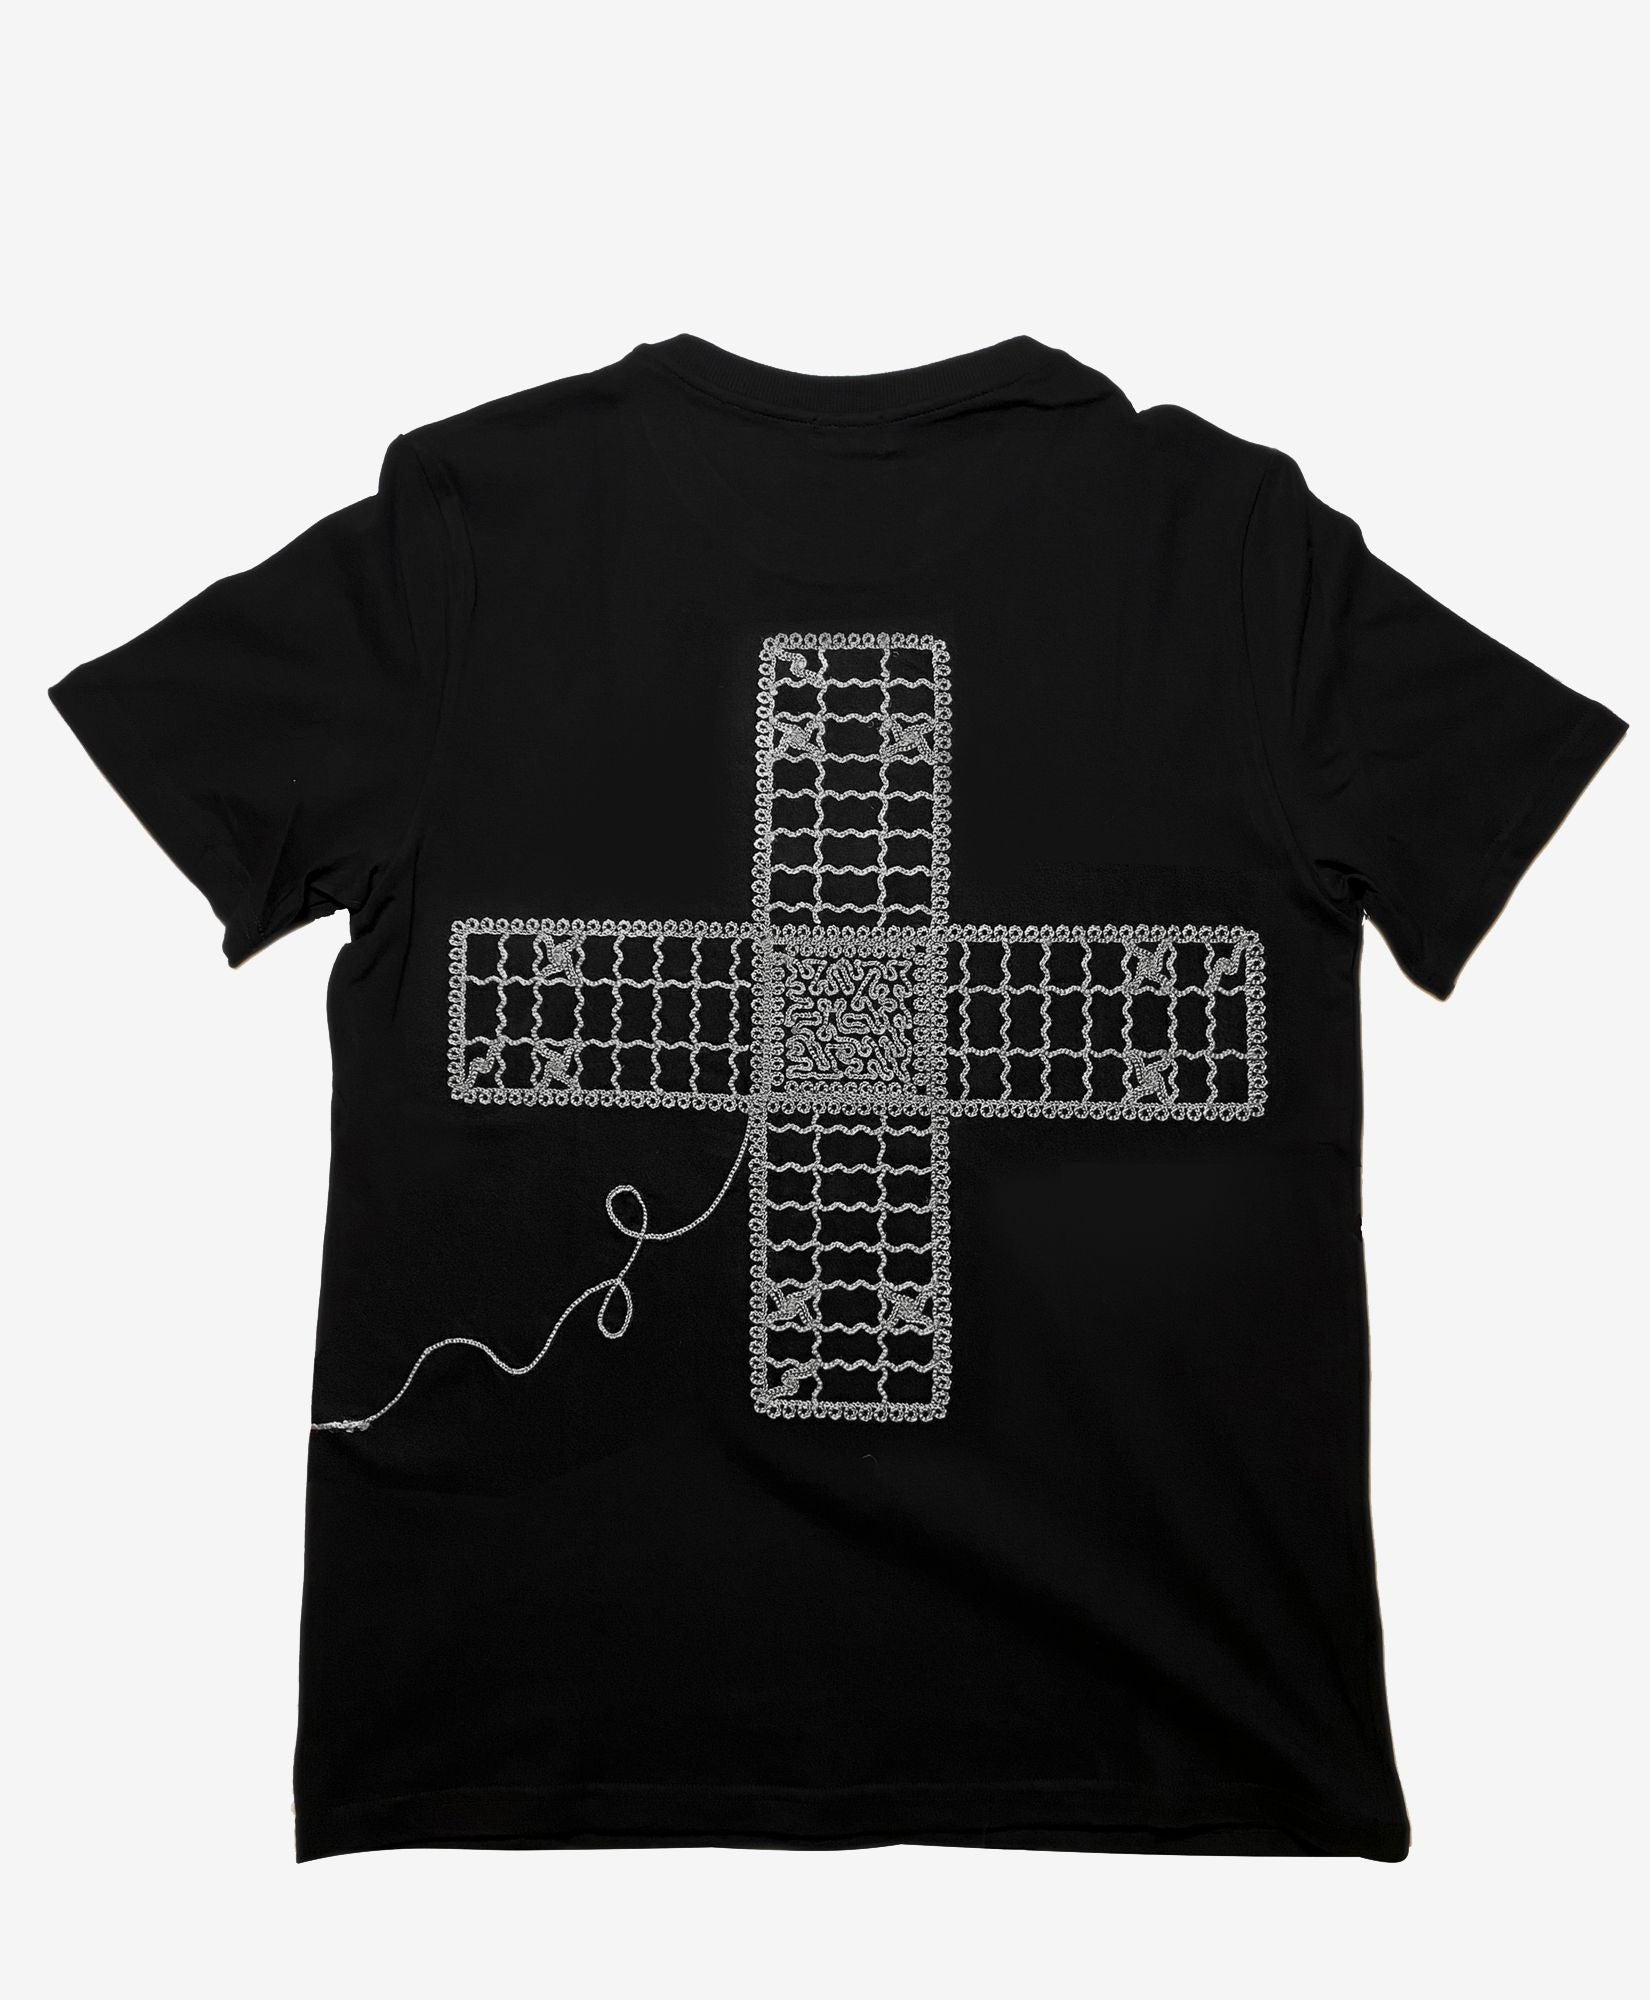 Besticktes T-shirt Schwarz + Brettspiel - Barjees - (Limitierte Auflage - 30 Stück)
